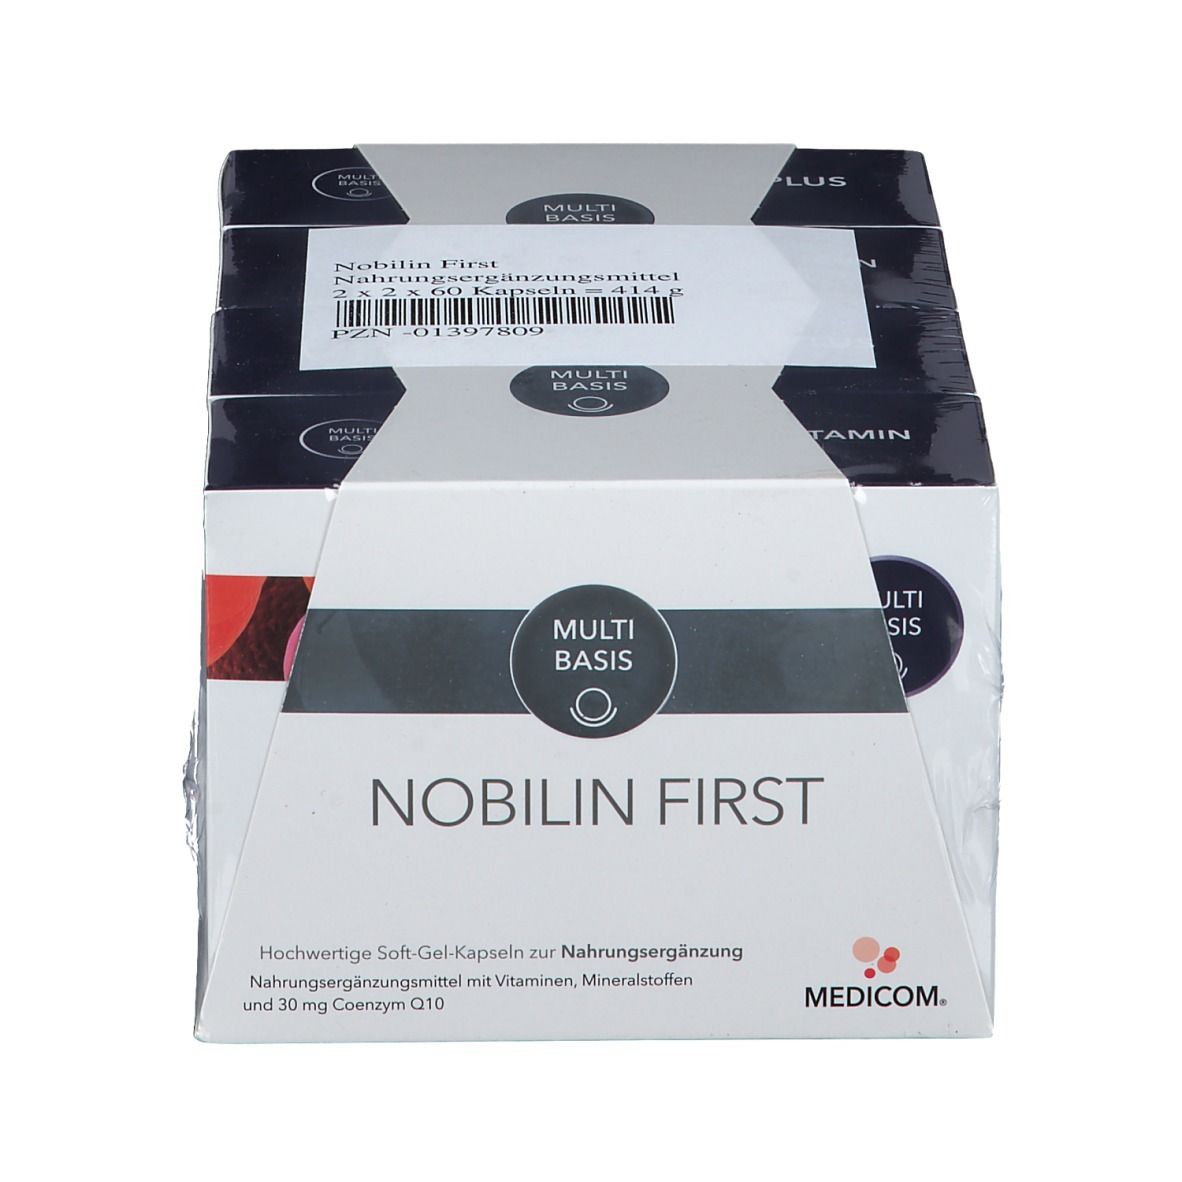 Nobilin Q10 Multivitamin First Kombipackung